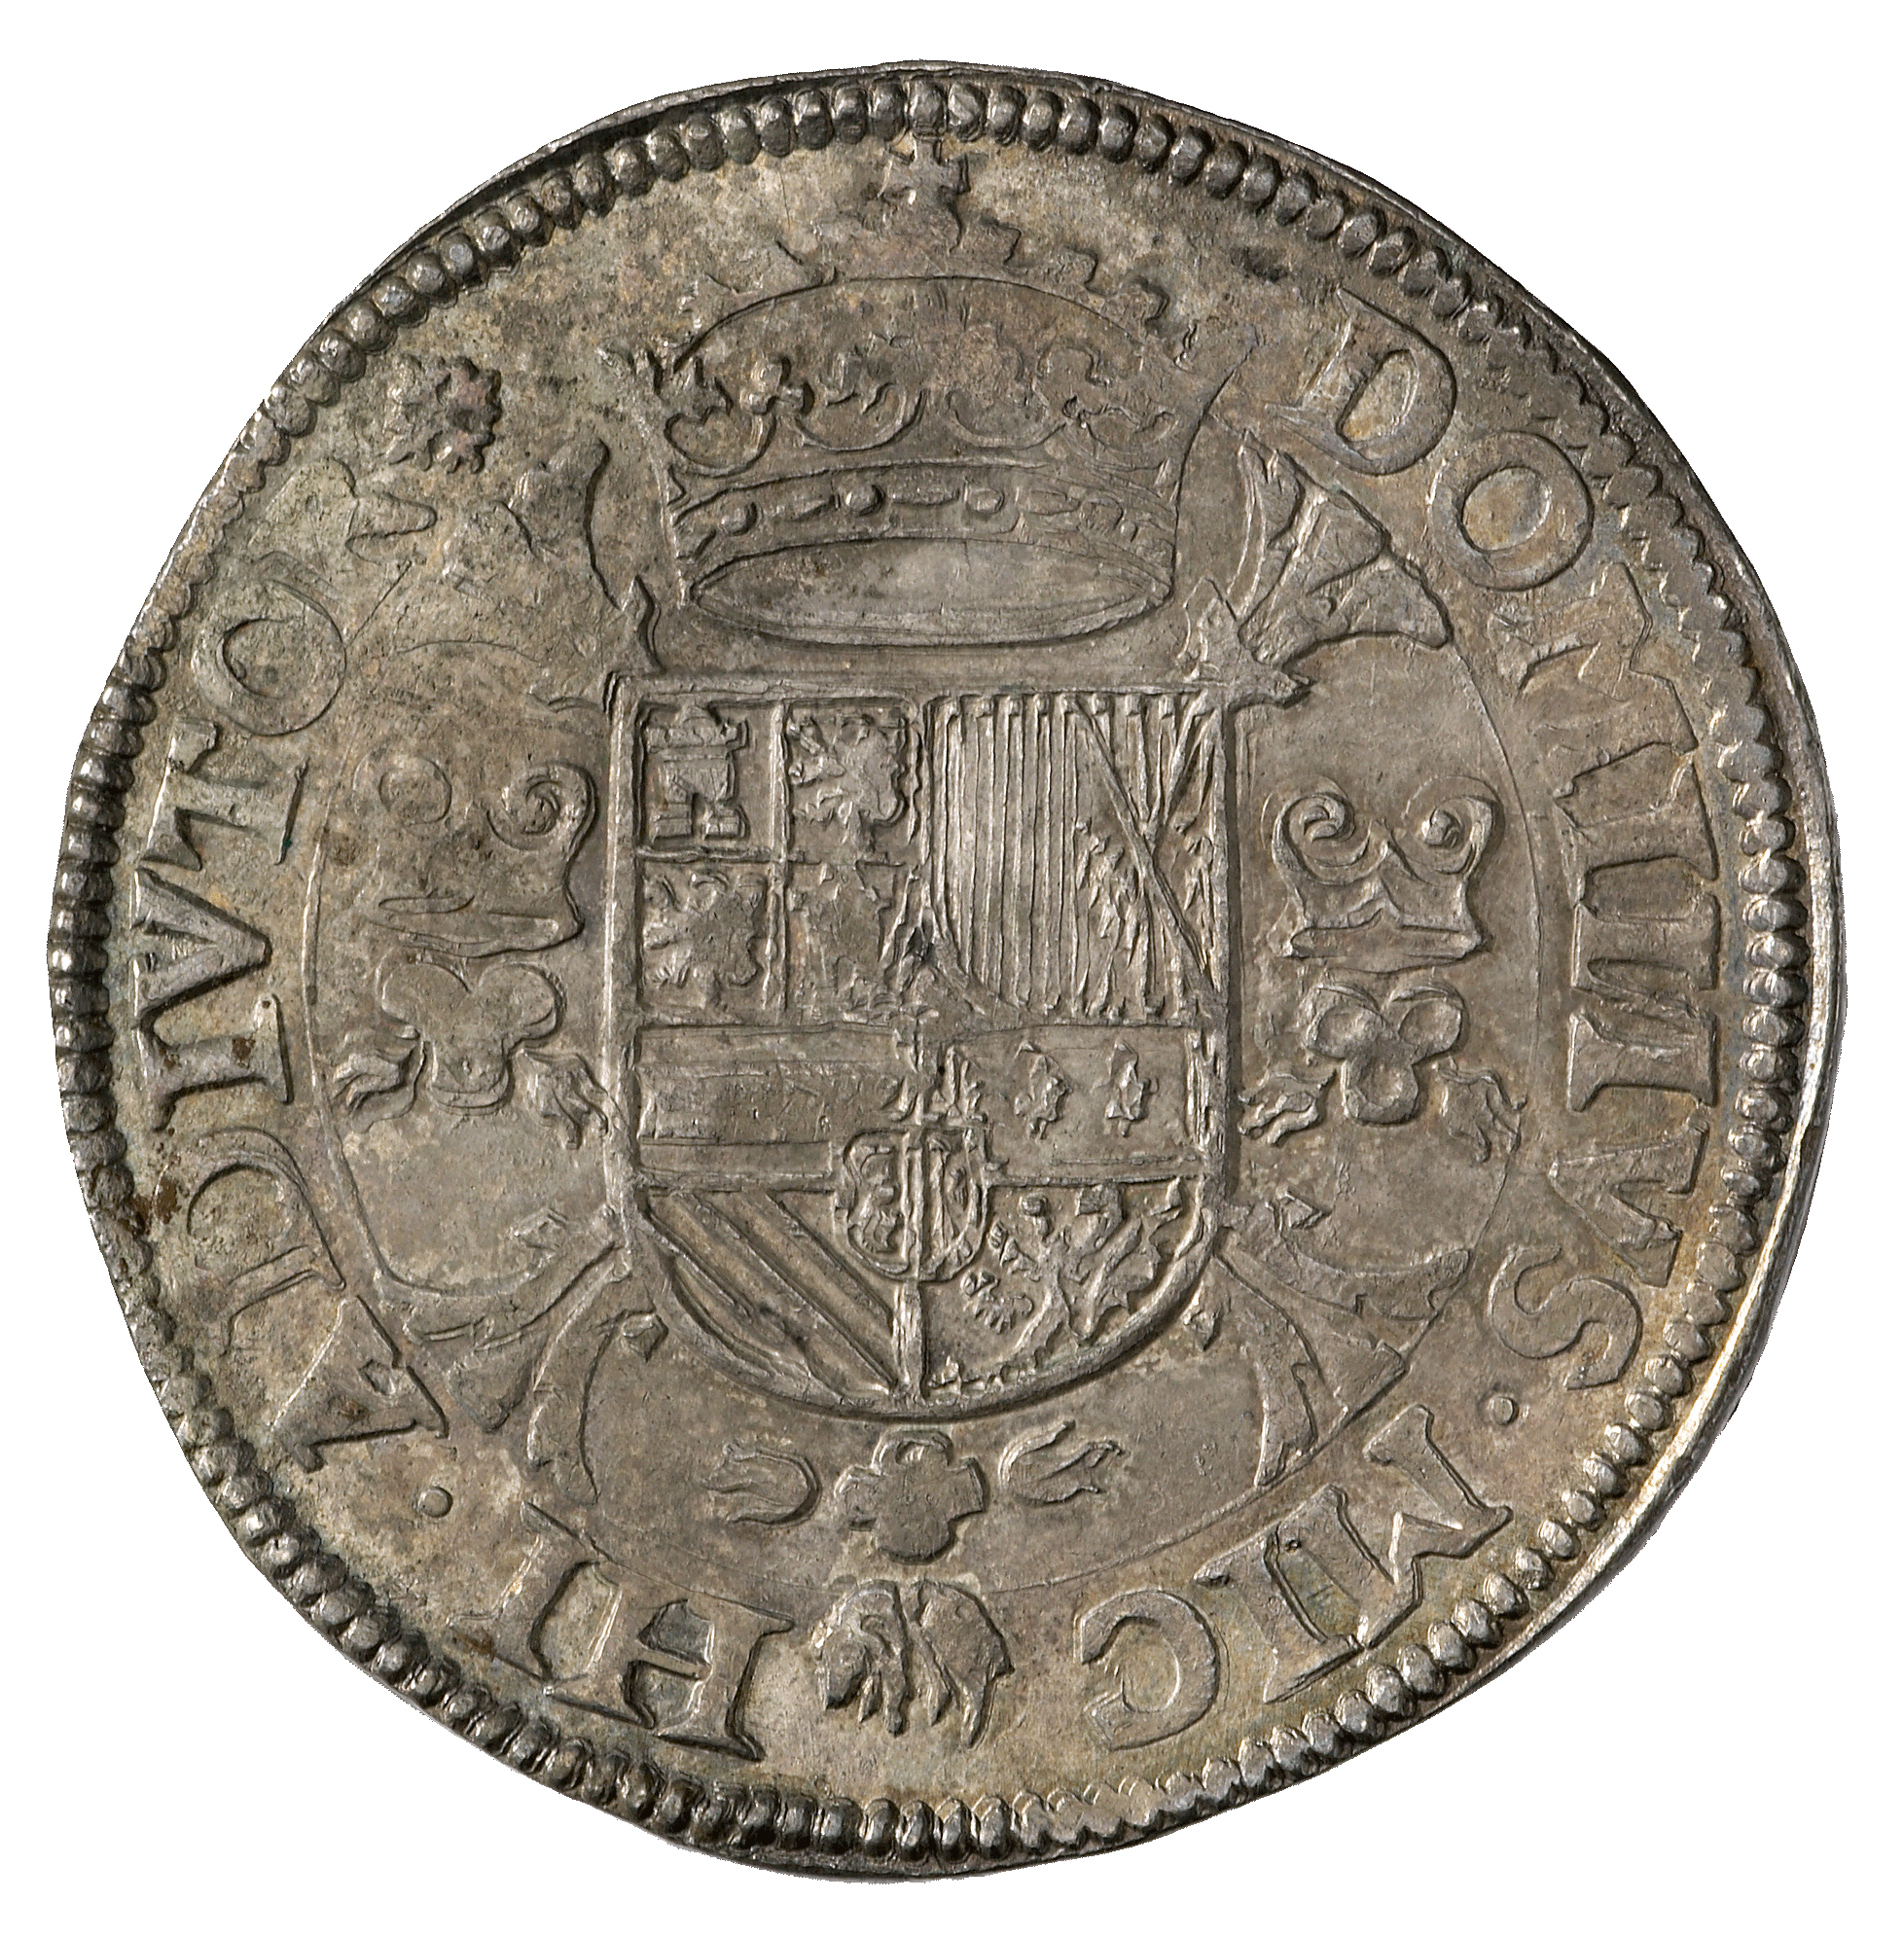 Heiliges Römisches Reich, Herzogtum Gelderland, Philipp II. von Spanien, Philippstaler (reverse)